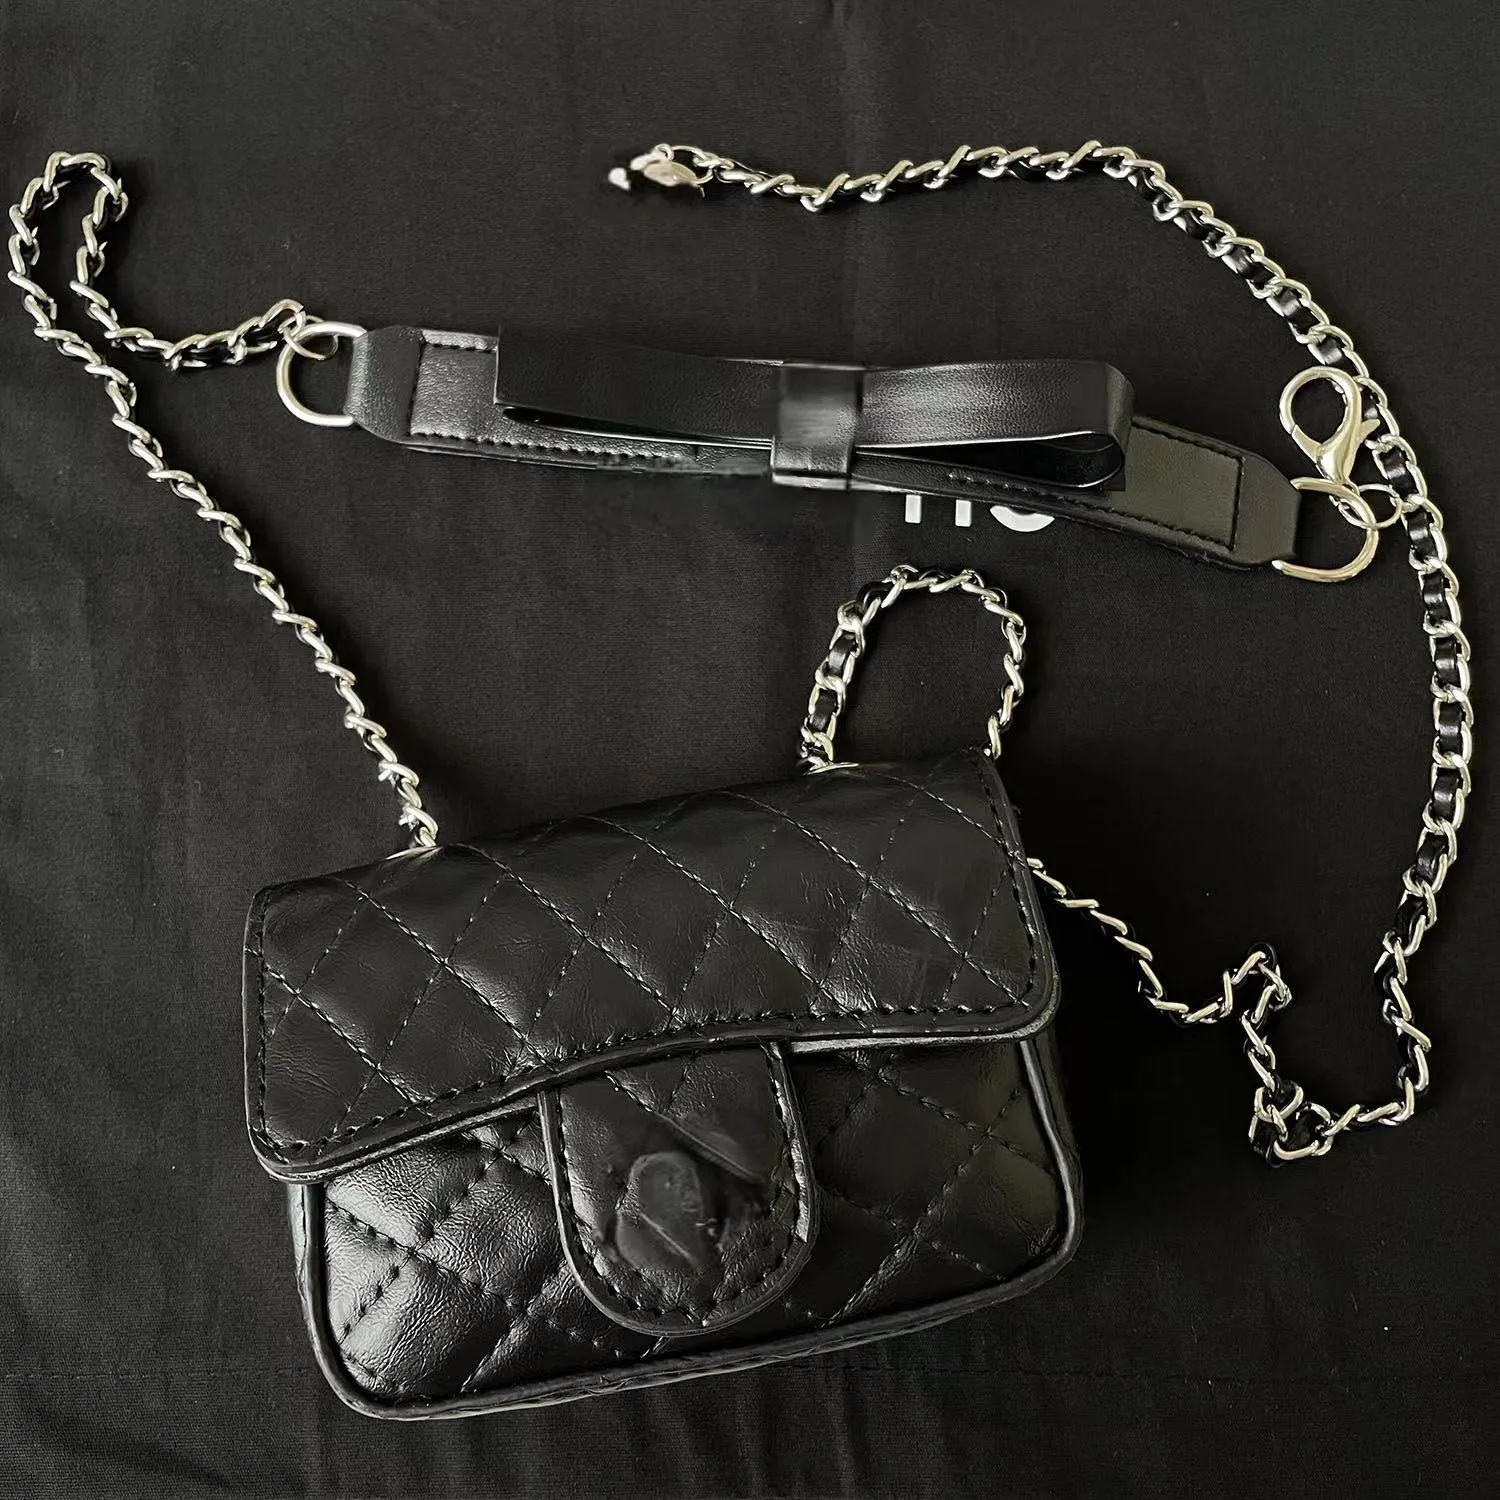 CC designer bag crossbody luxury handbag Classic small square purse Fashion Bags Leather Handbag ladies tote flap bag